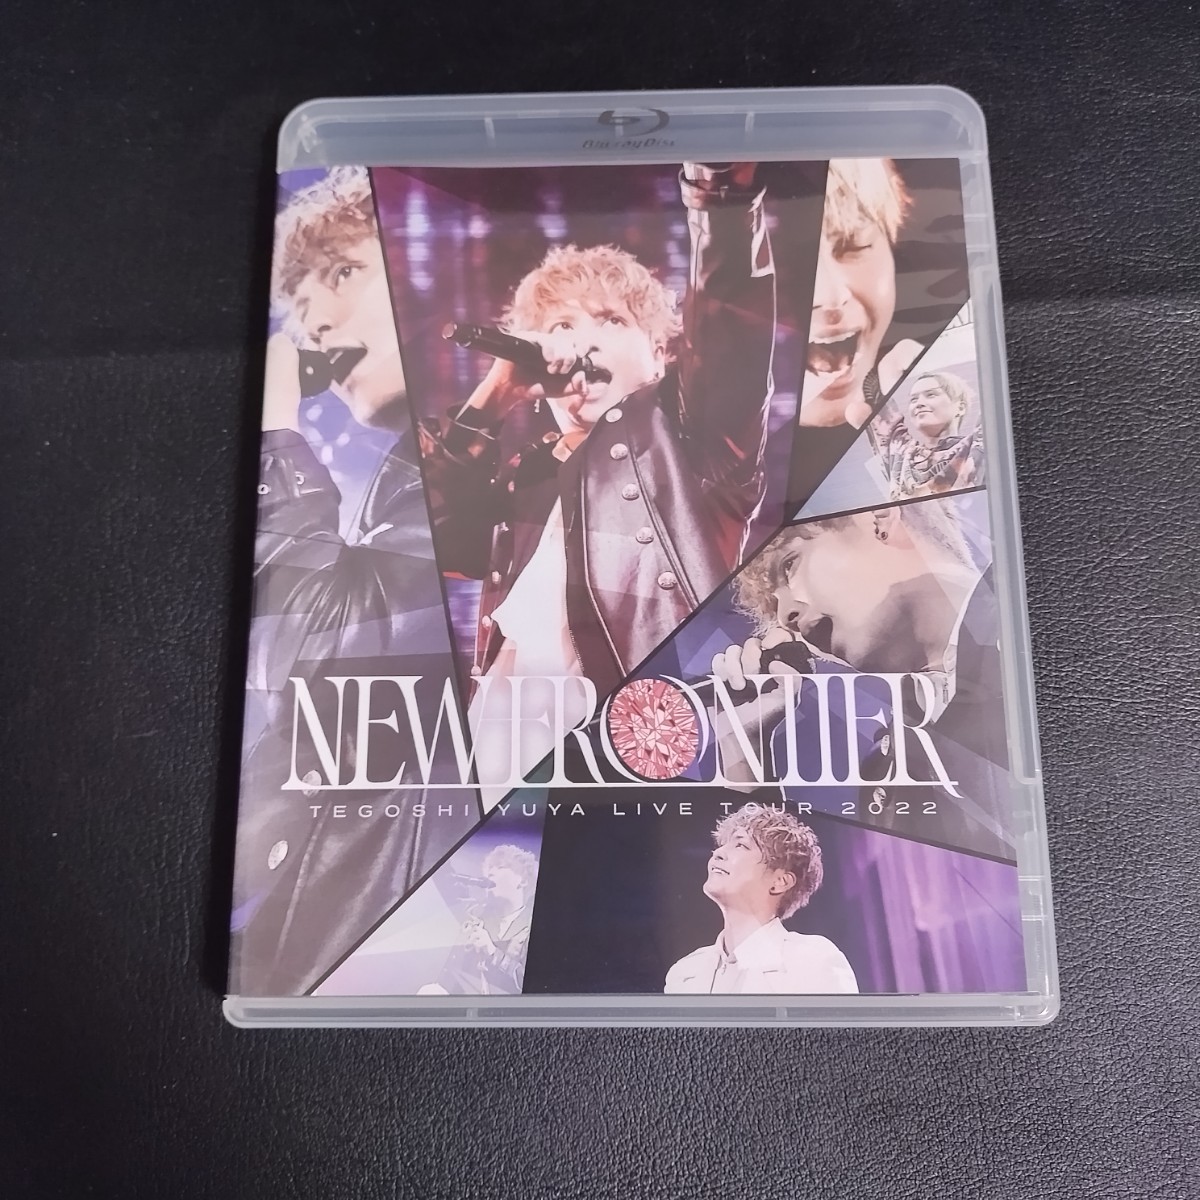 【手越祐也】 LIVE TOUR 2022「NEW FRONTIER」 邦楽 BluRay ステッカー付き 棚6_画像1